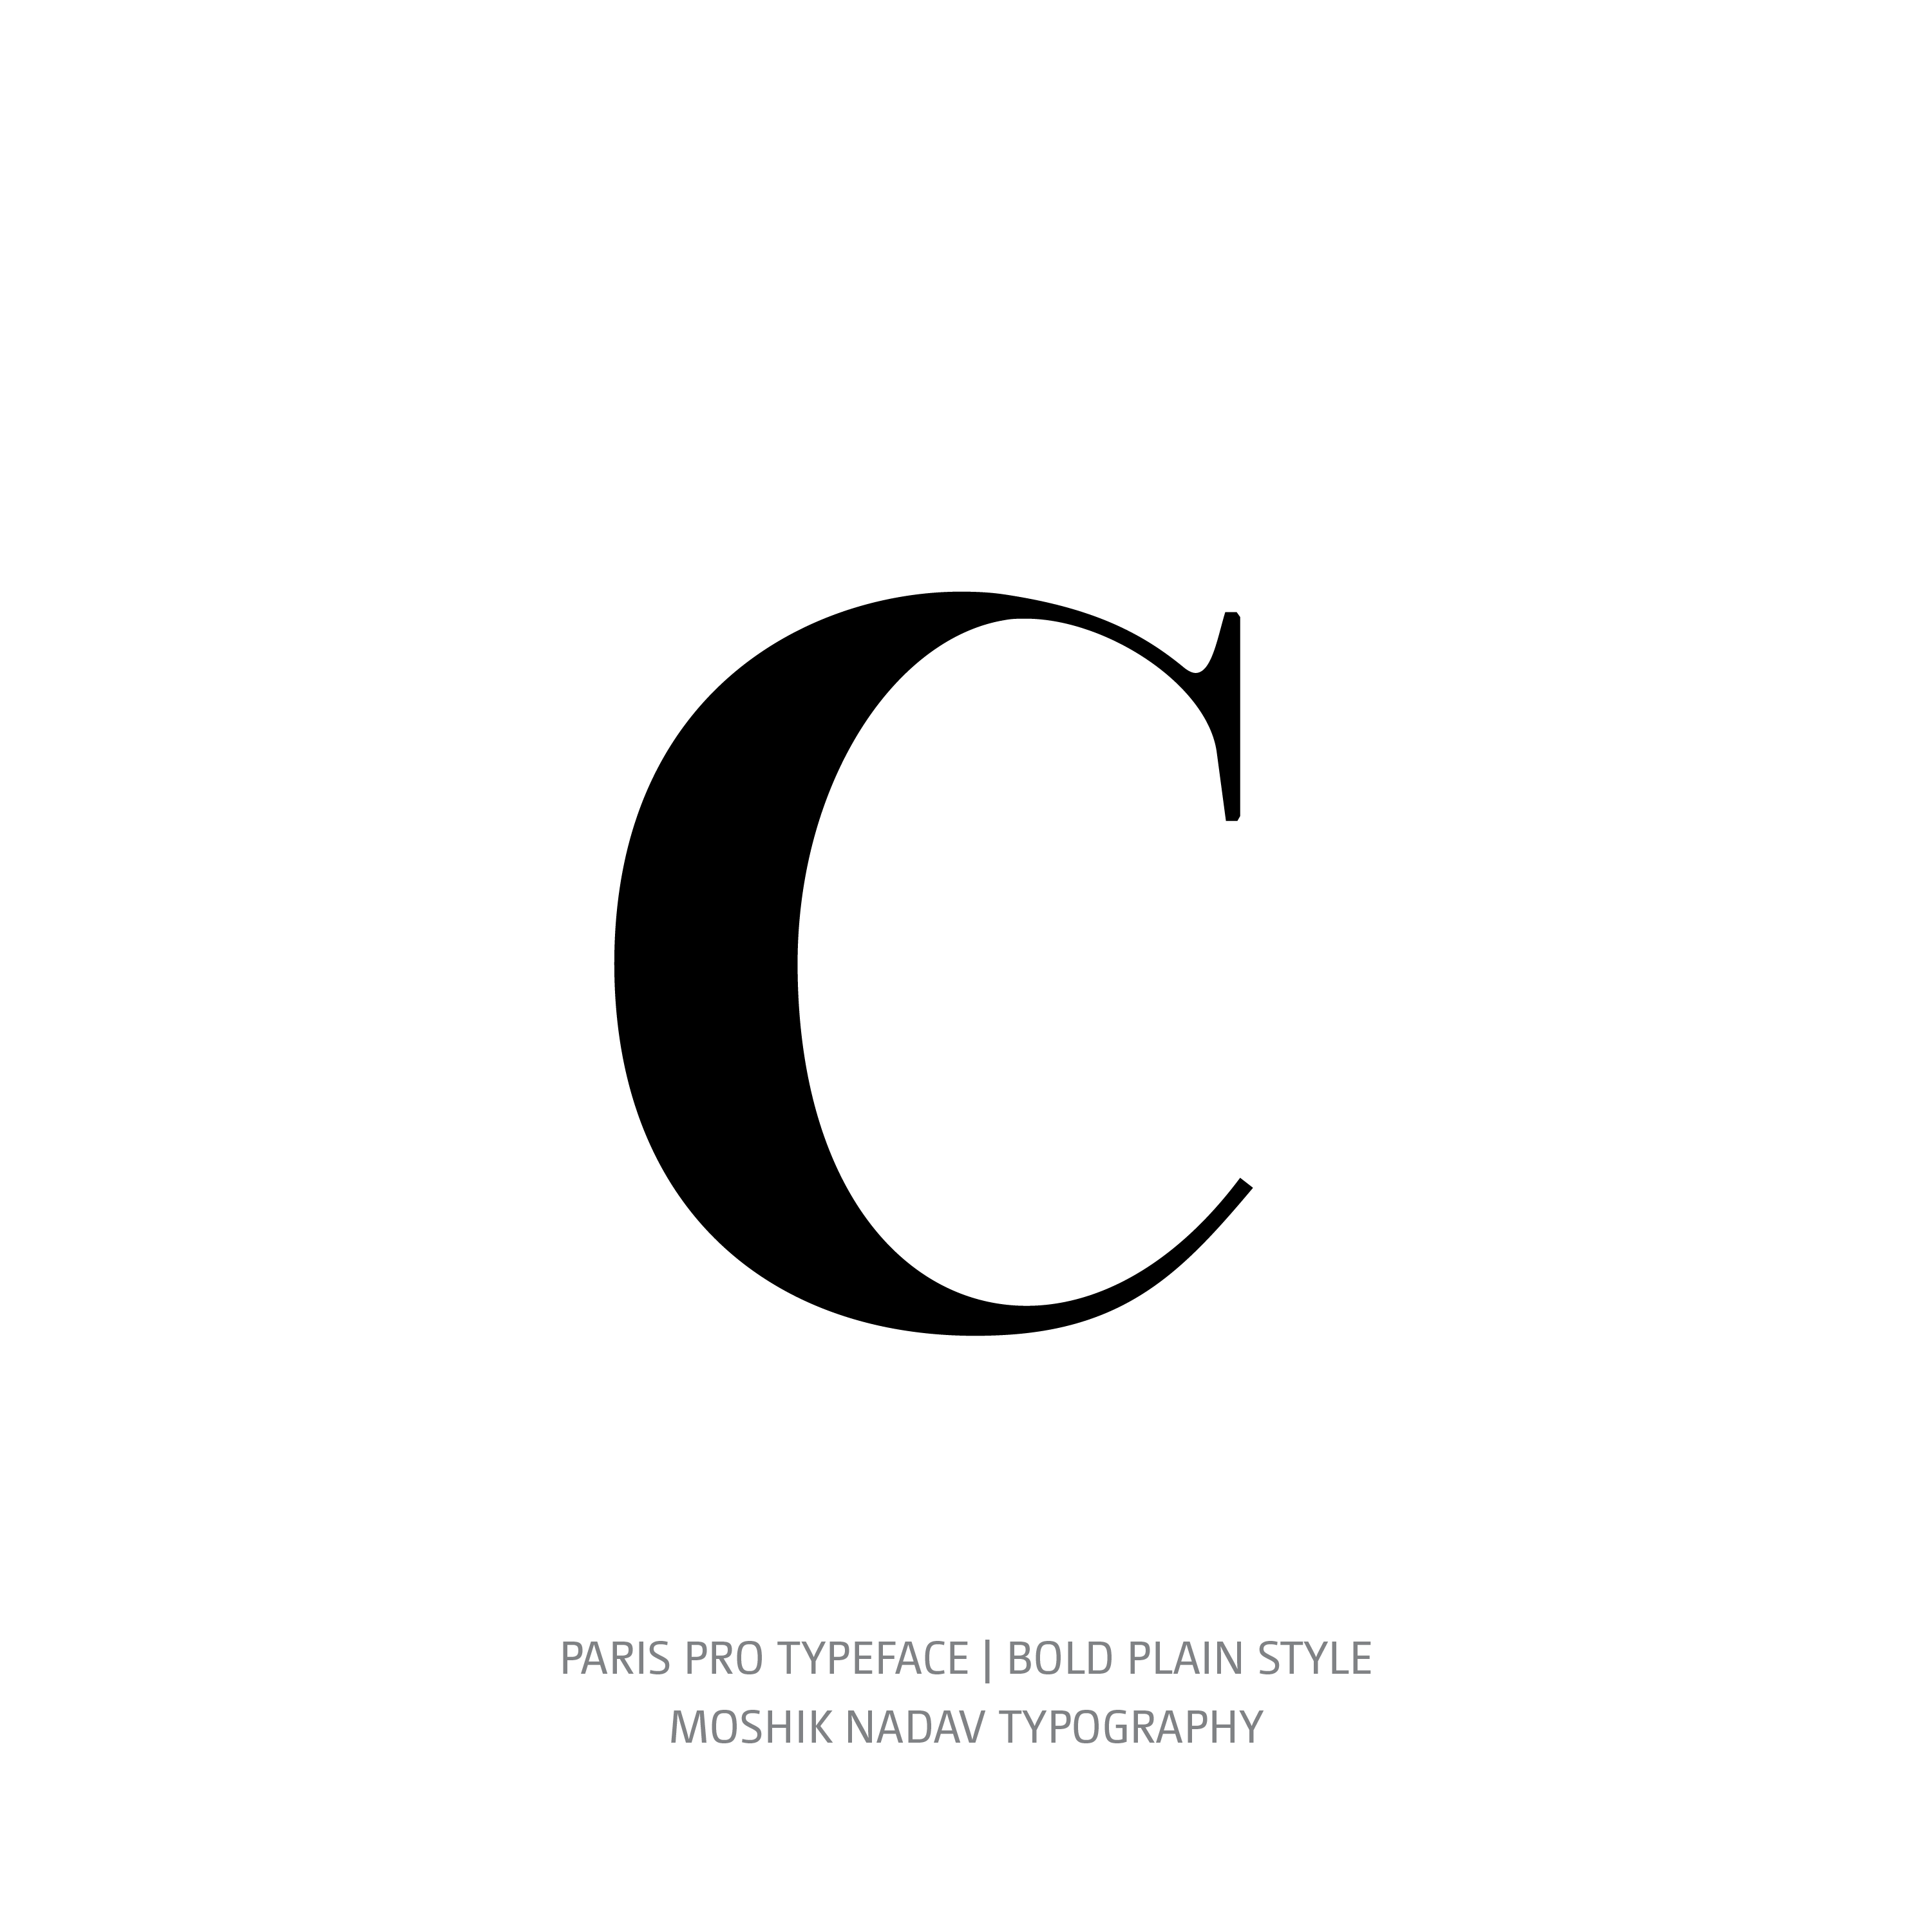 Paris Pro Typeface Bold Plain c